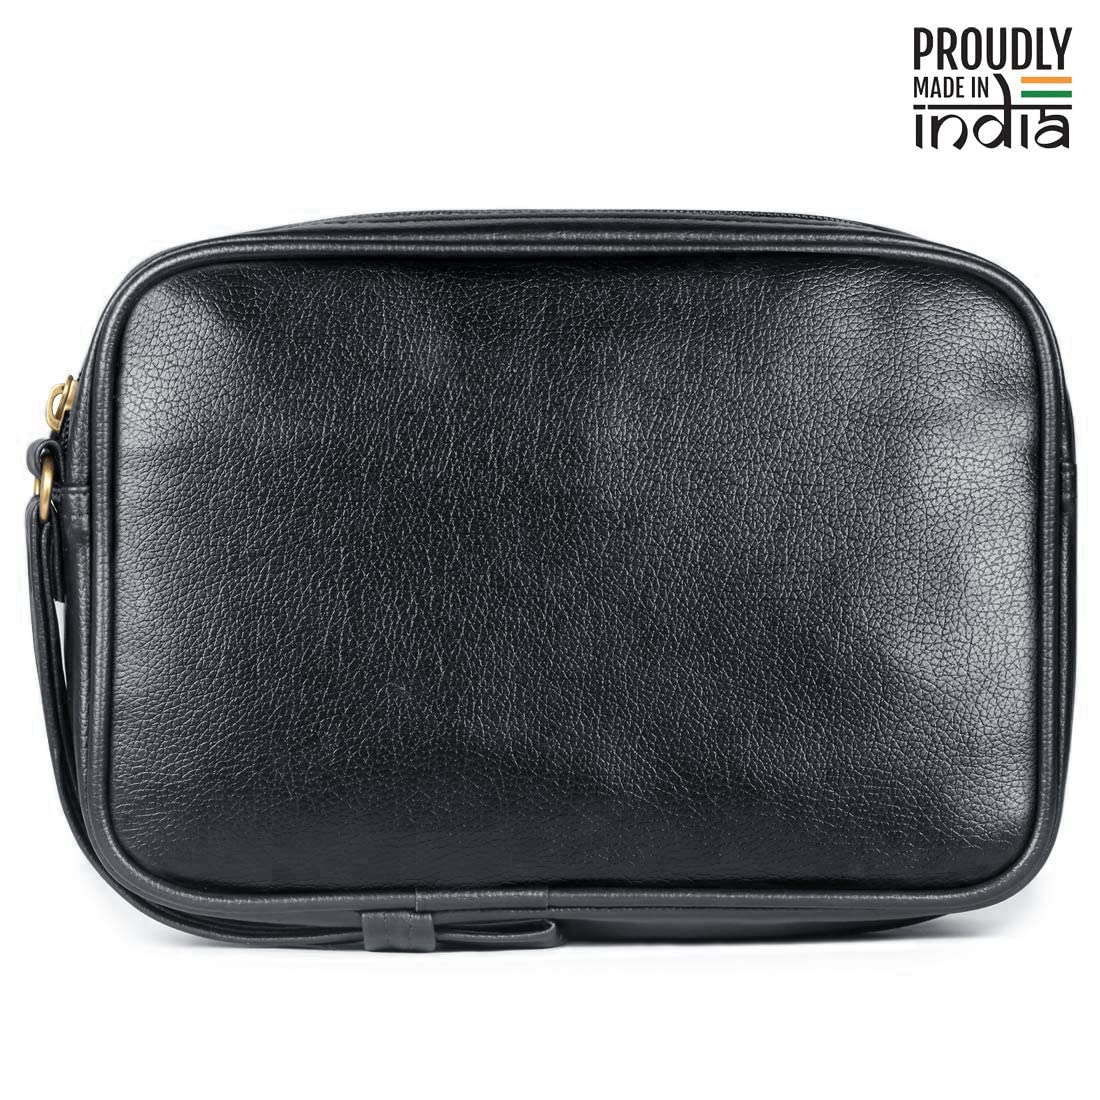 THE CLOWNFISH Men Multipurpose Travel Pouch Money Cash Pouch Wrist Handbag Coin Bag (Black)